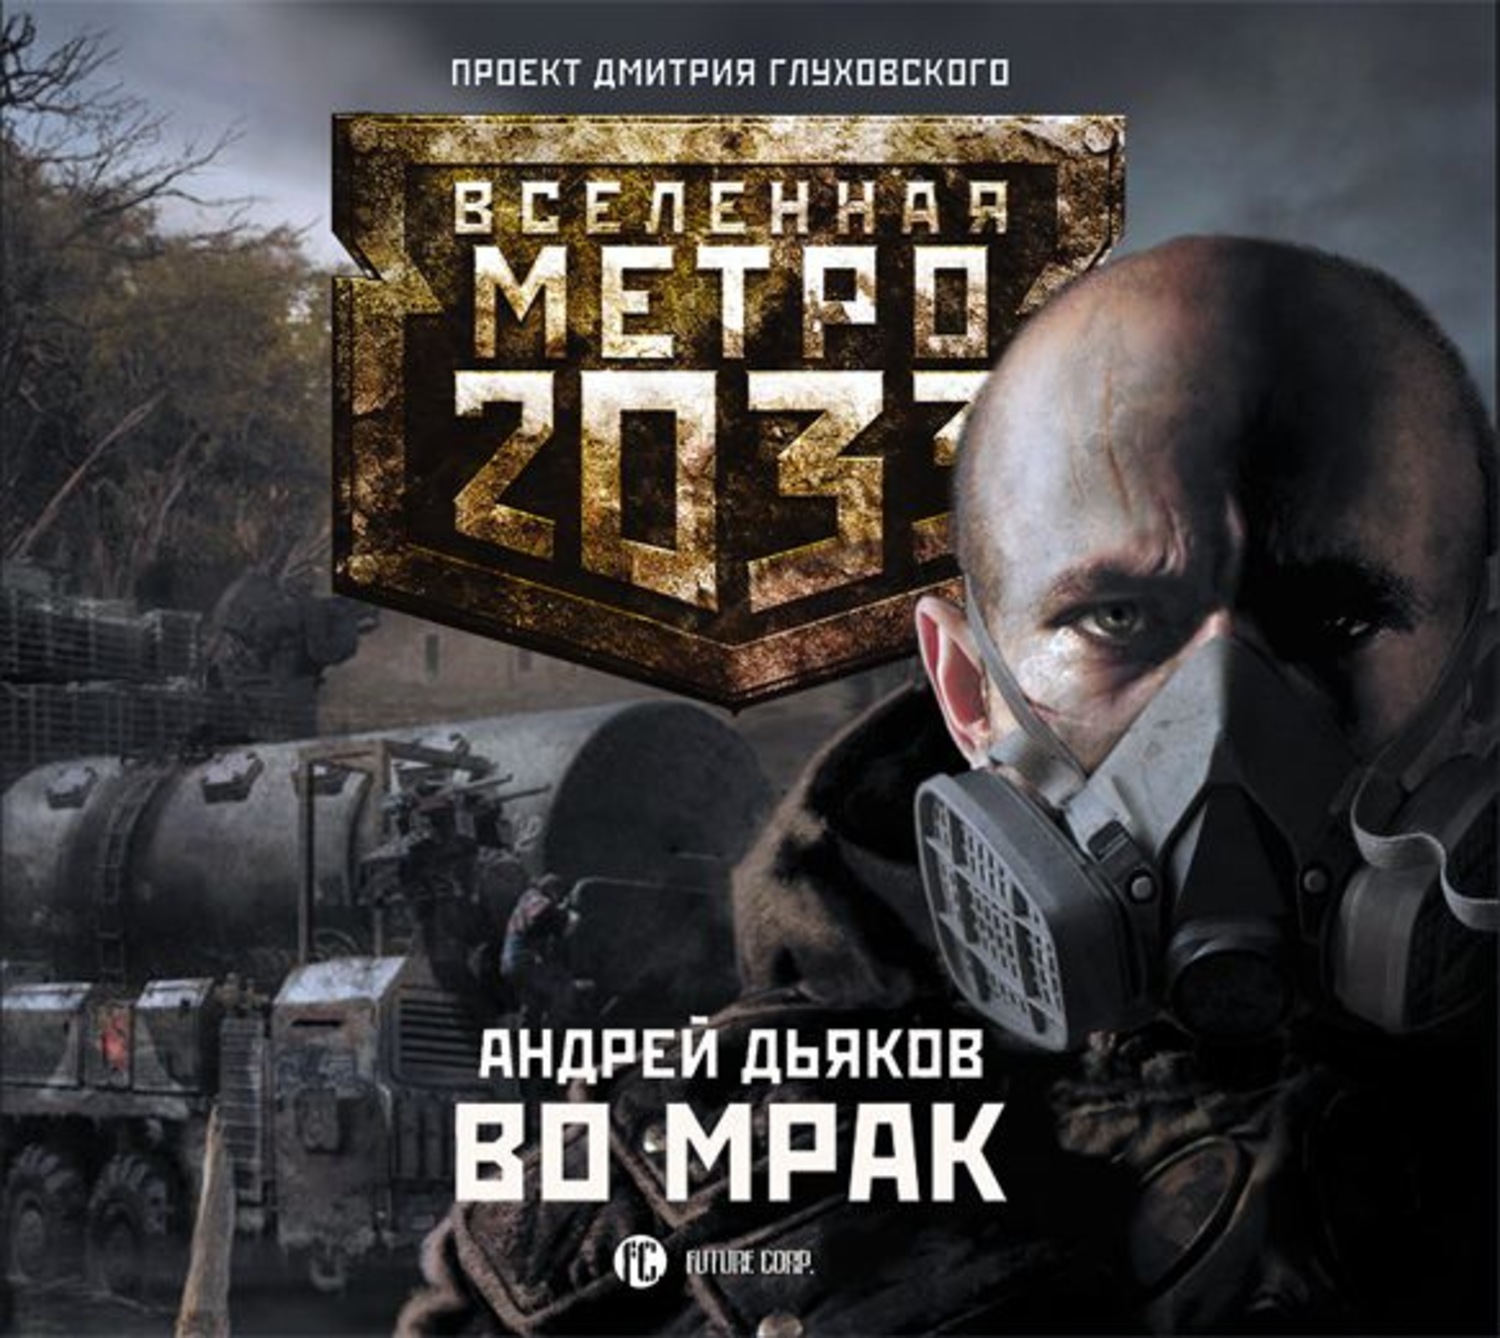 Книги метро 2033 аудиокнига. Вселенная метро 2033: во мрак. Писатель Дьяков метро 2033.